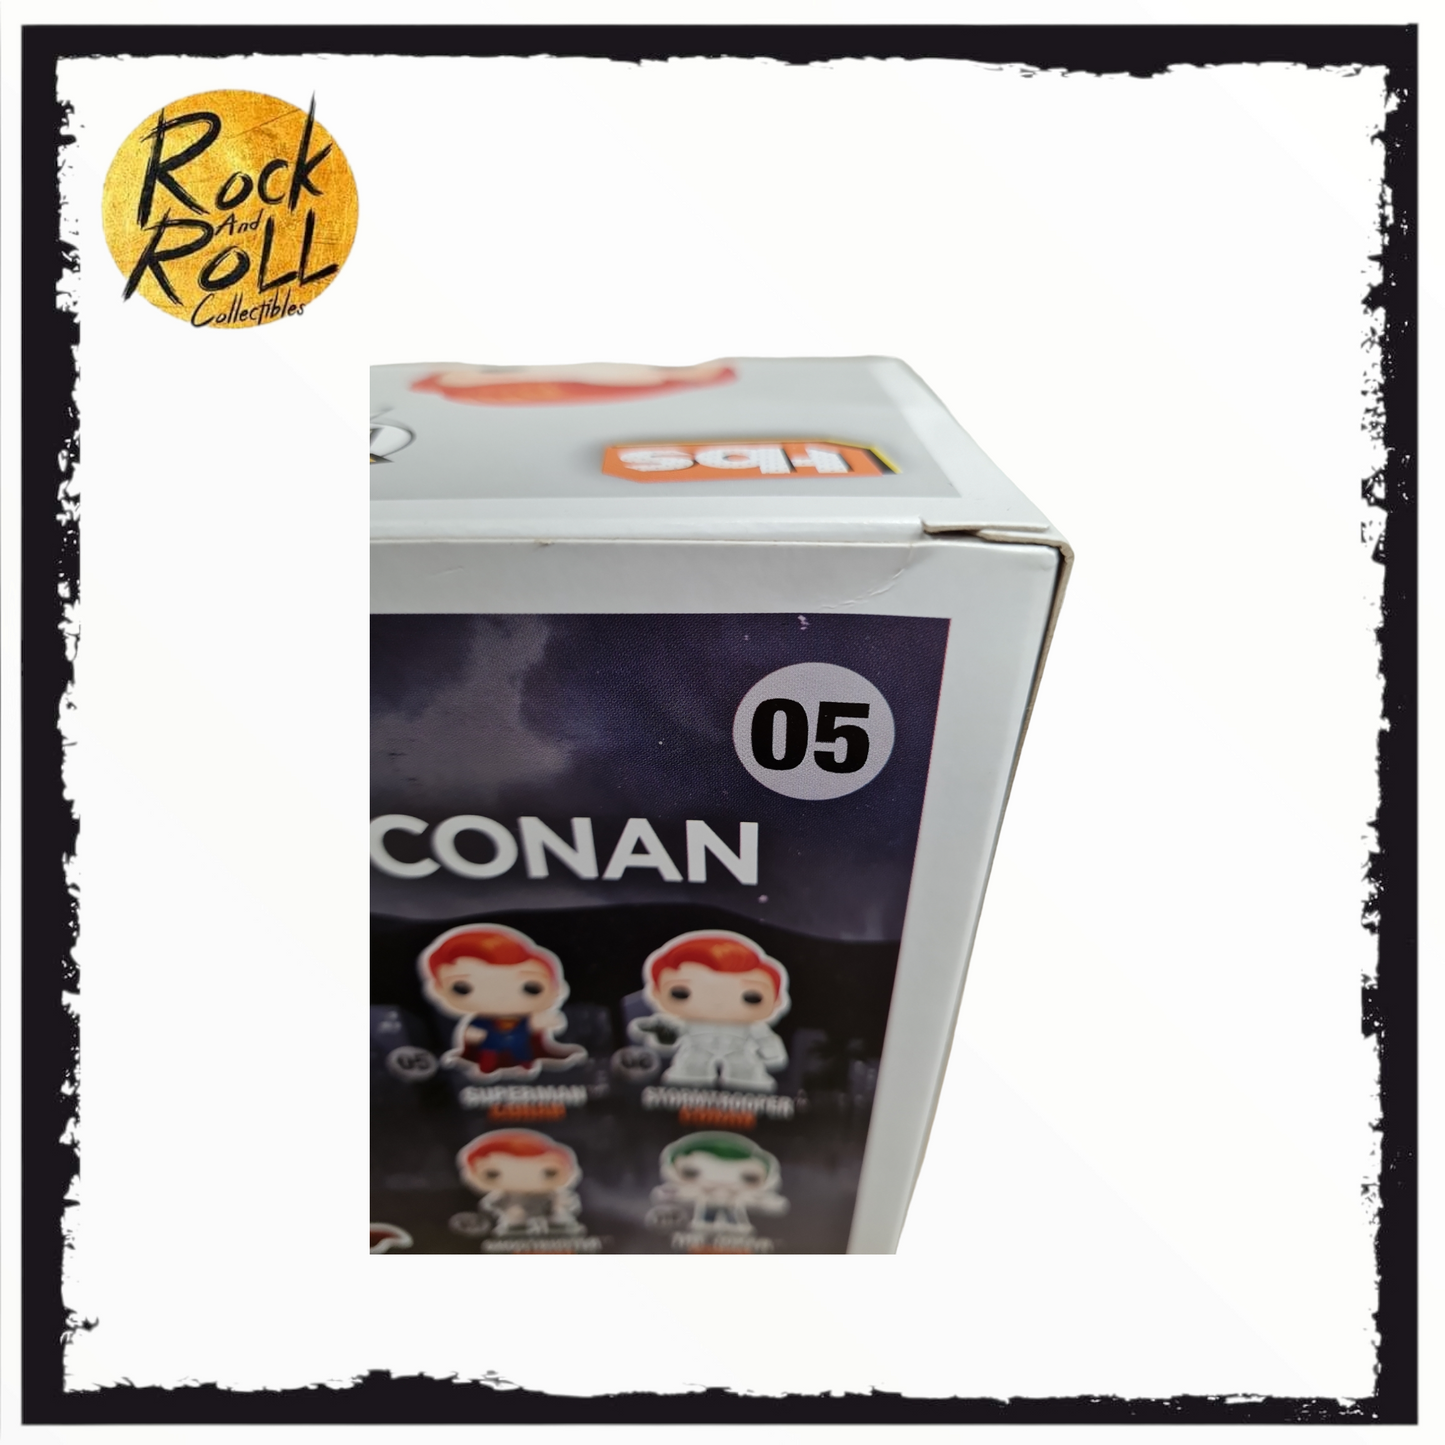 Conan - Conan As Superman Funko Pop! #05 2016 SDCC Condition 6/10